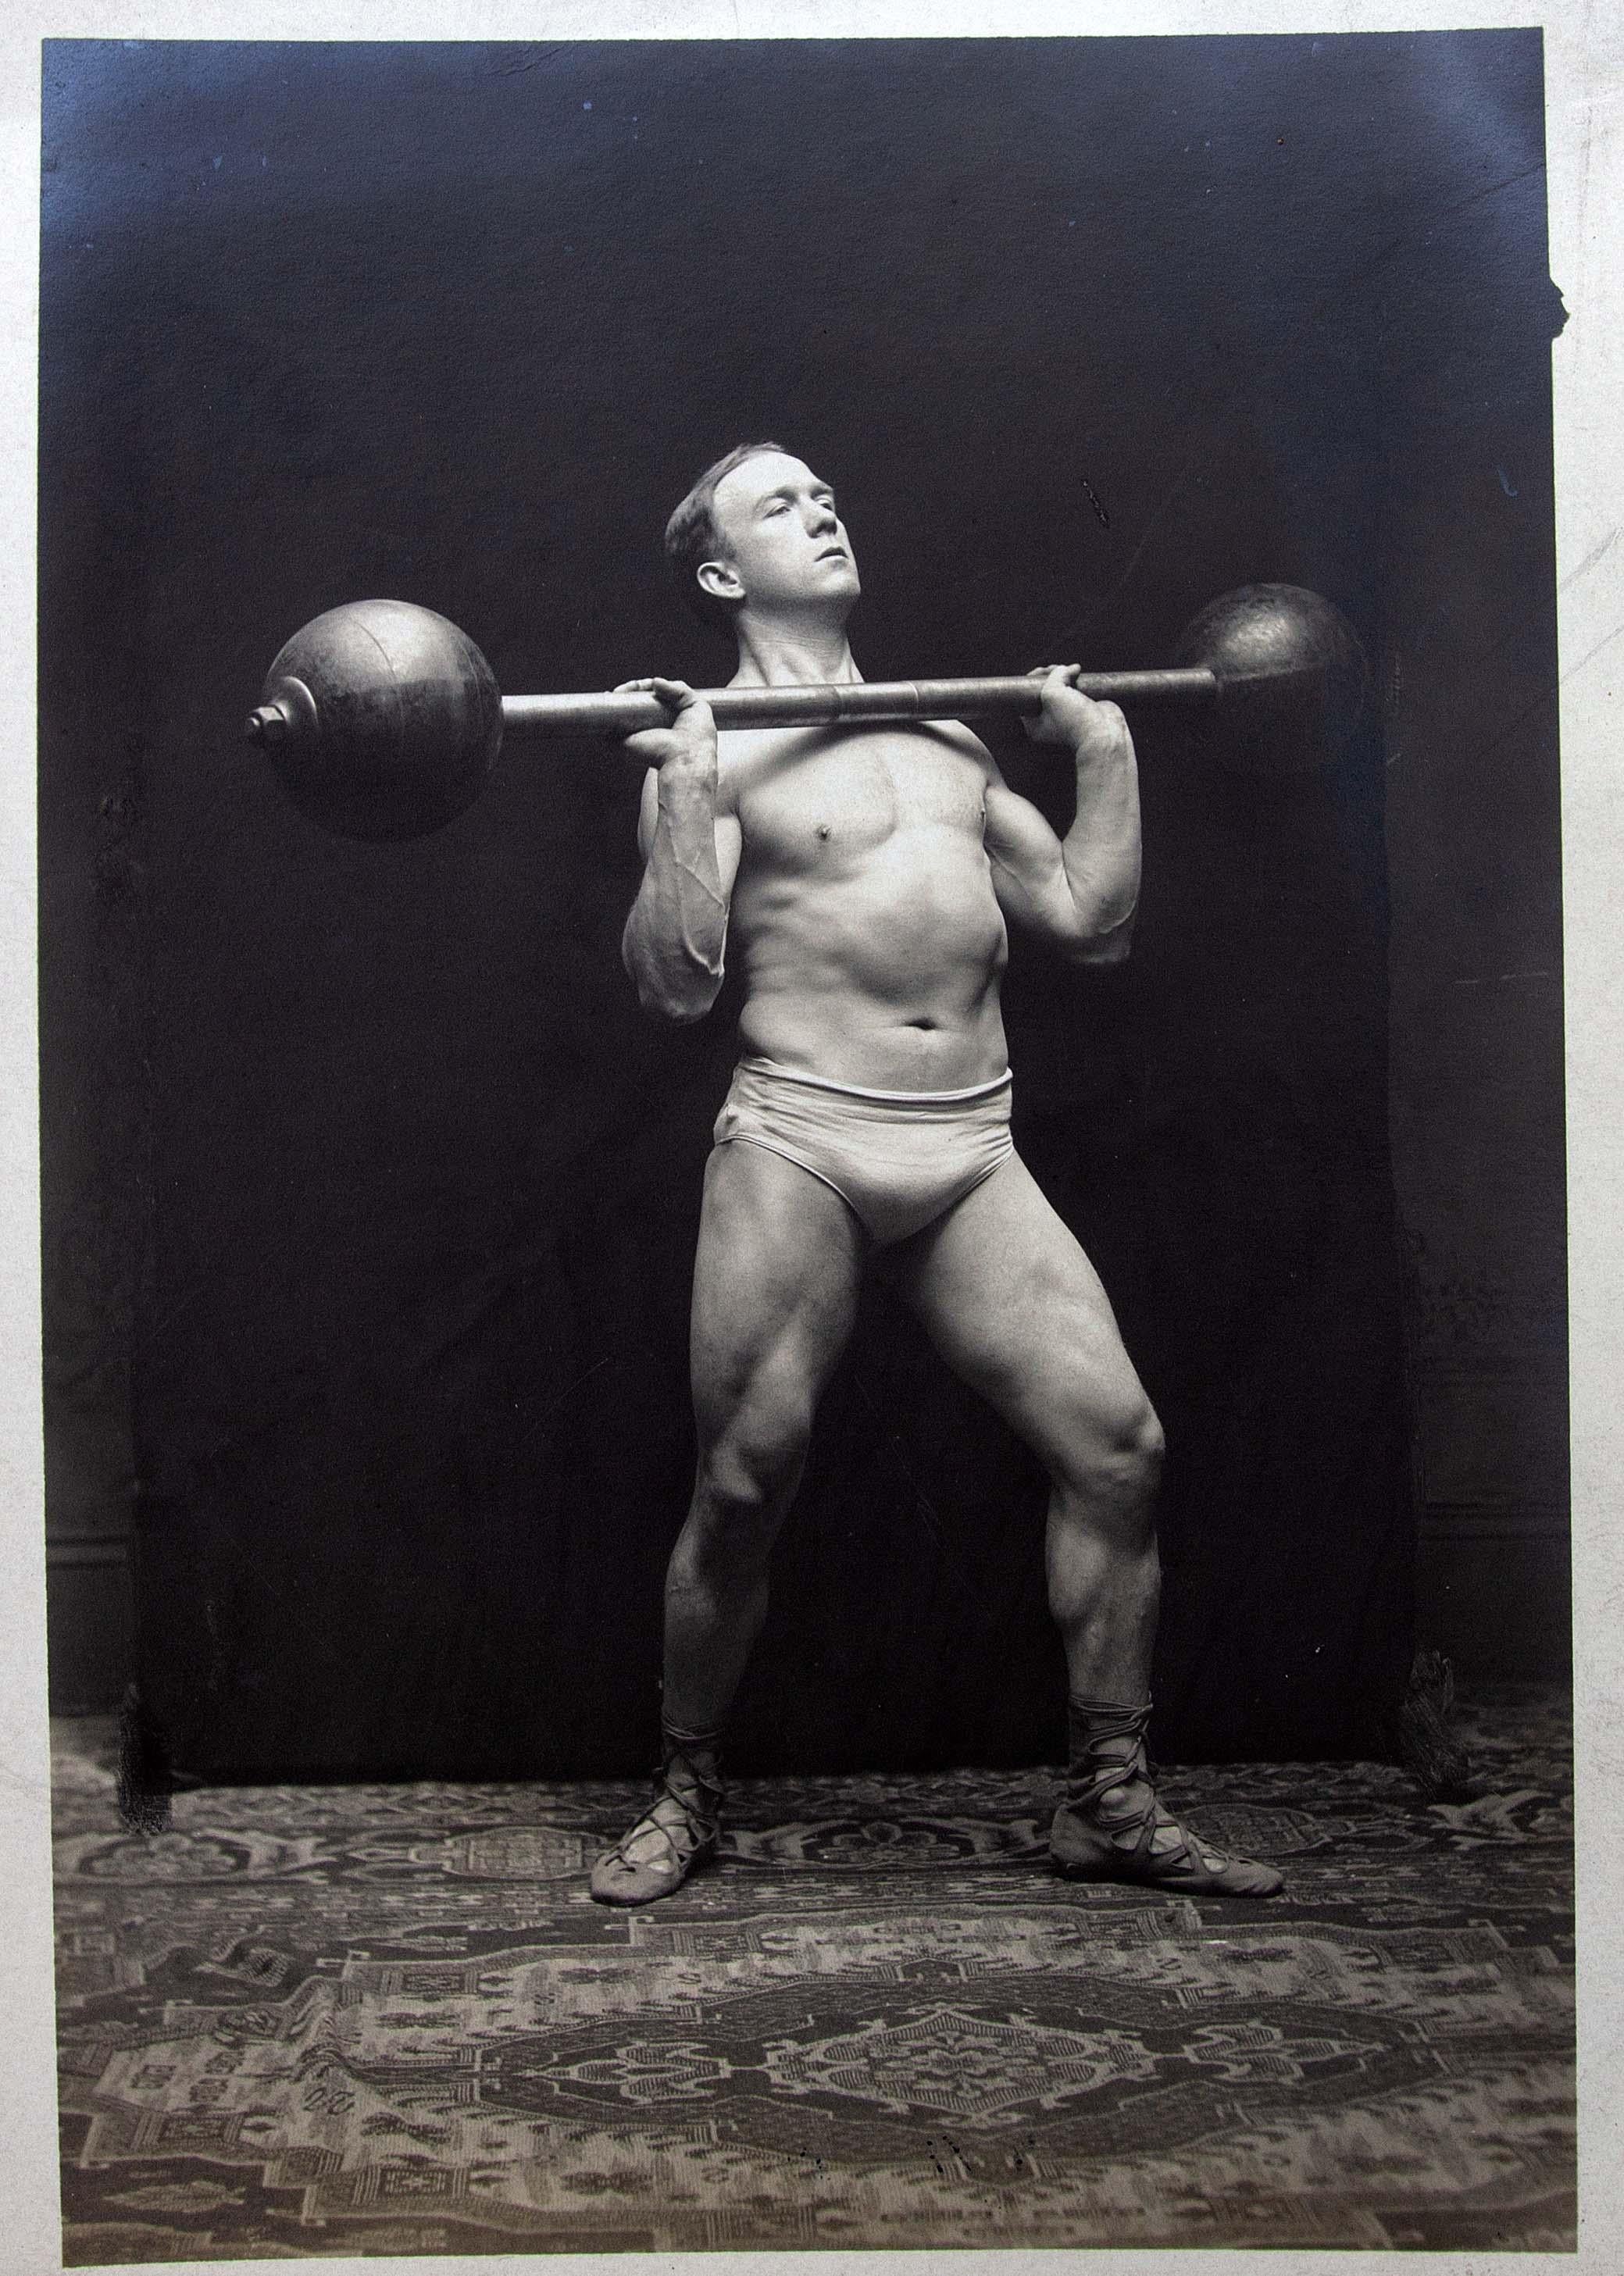 1920s bodybuilders